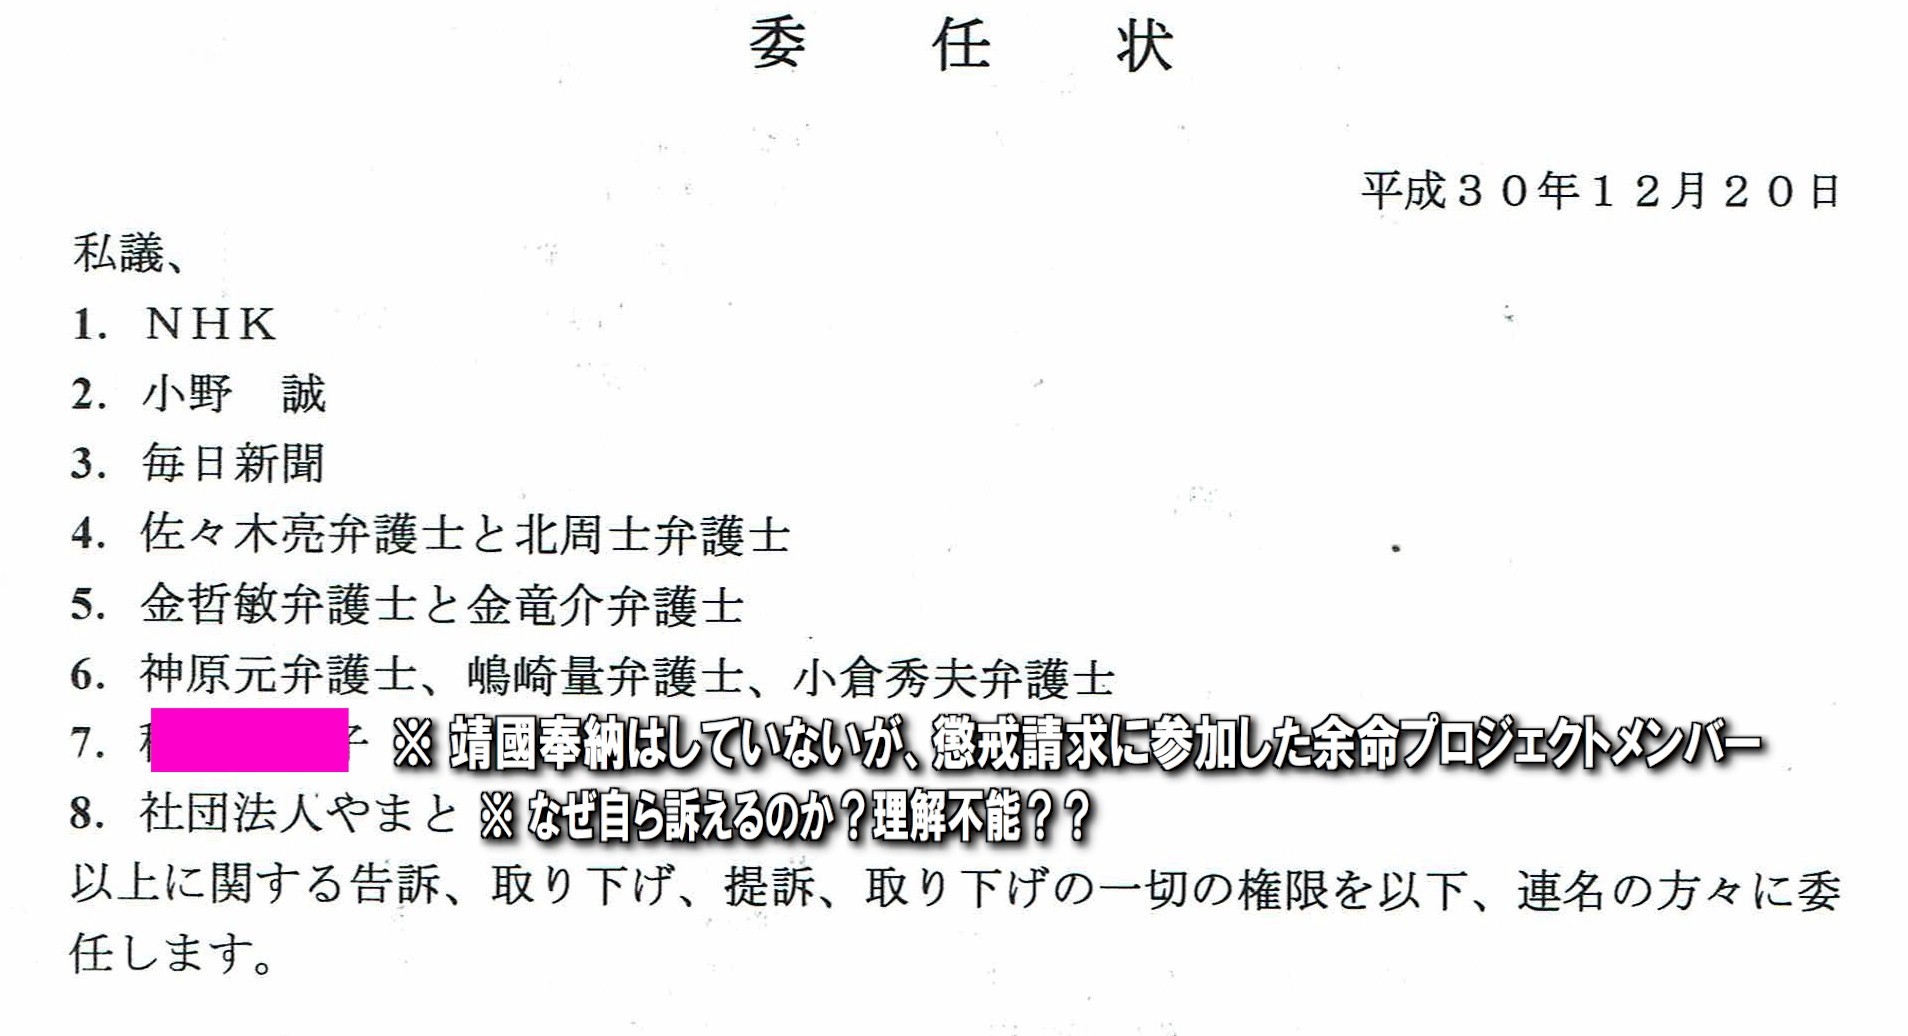 虚偽告訴罪 教唆「検察への告発 第7次」 余命三年時事日記から日本の名誉を取り戻す会